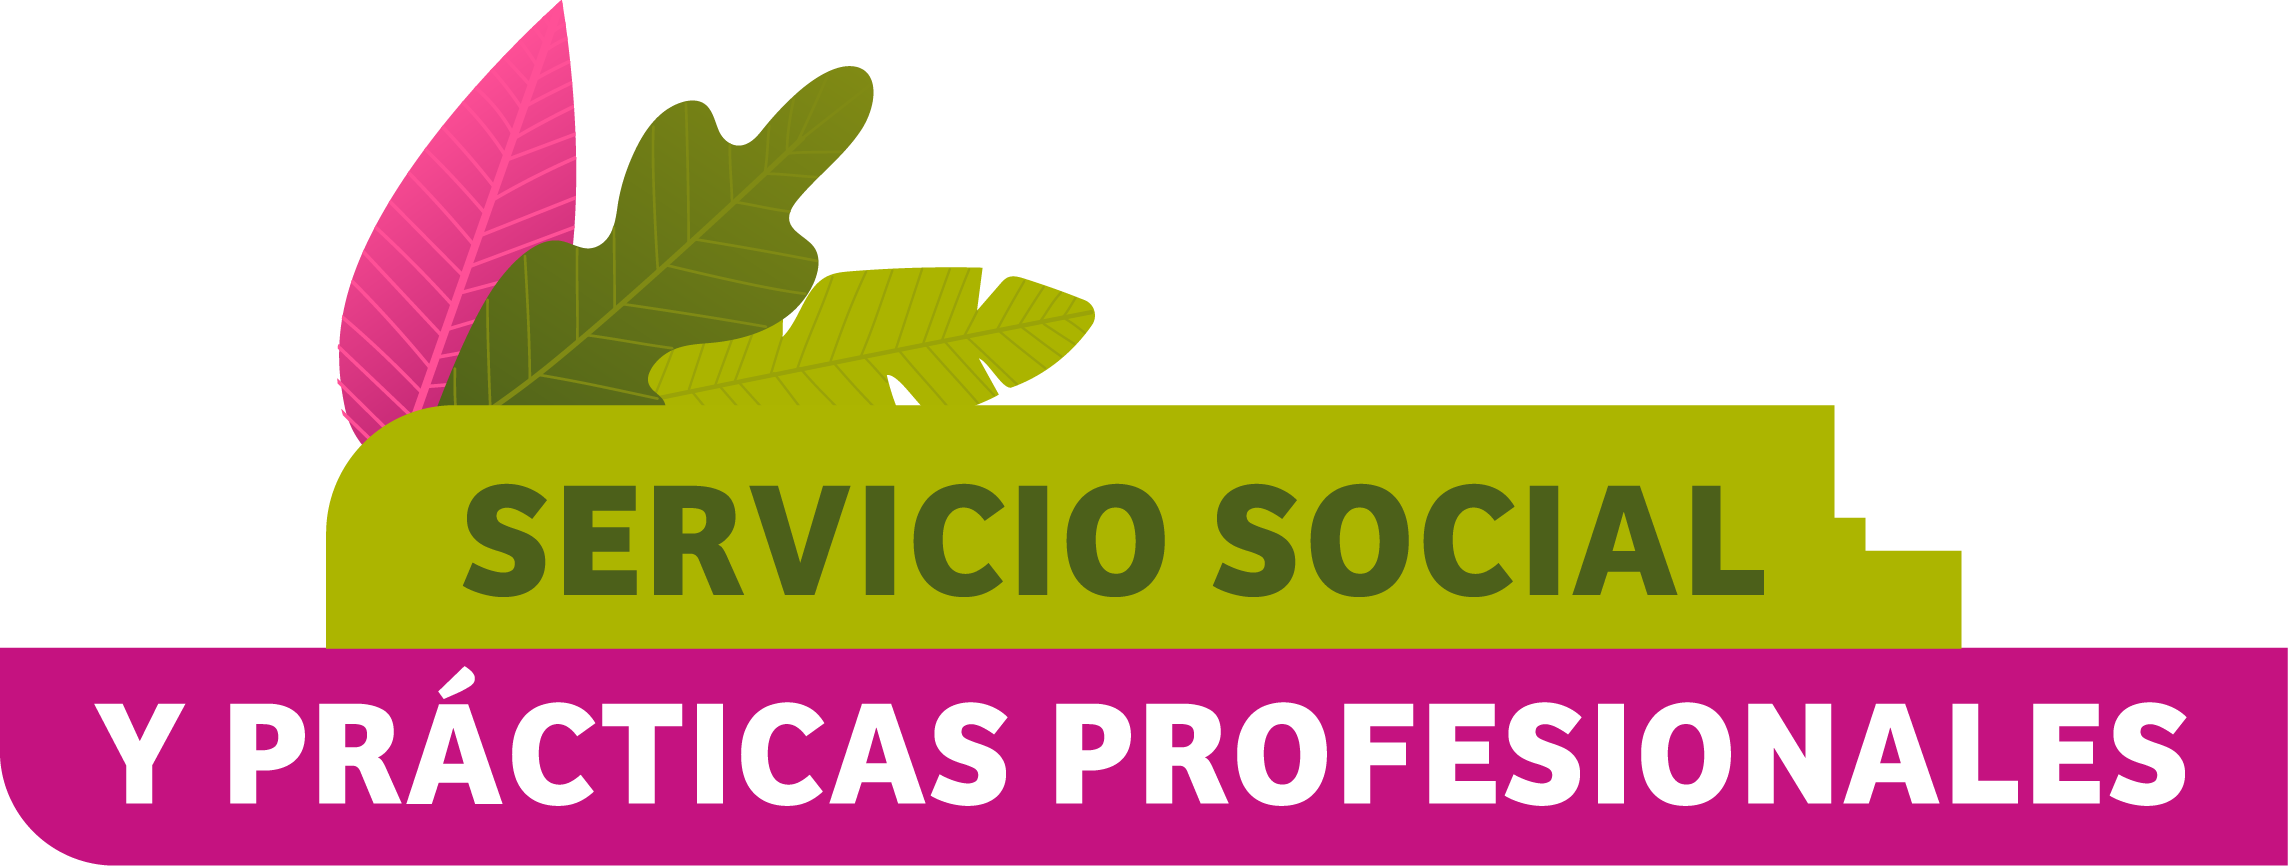 SERVICIO SOCIAL Y PRÁCTICAS PROFESIONALES